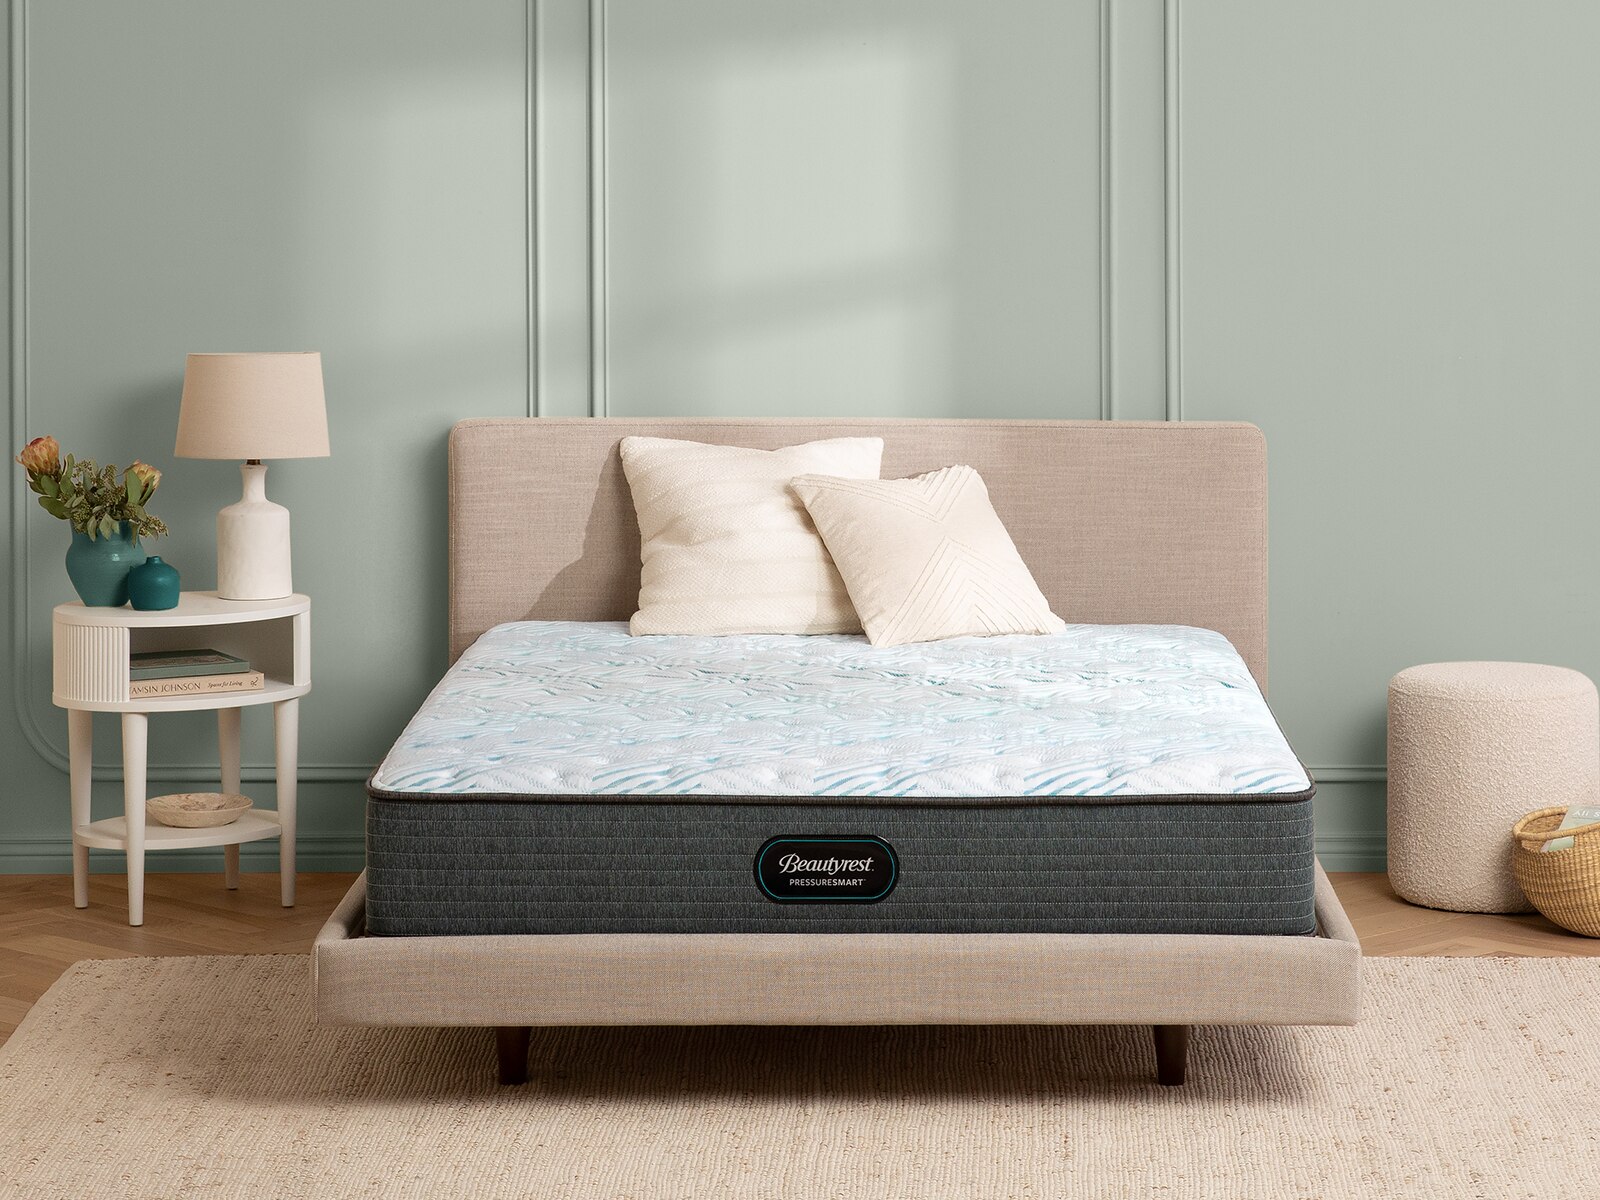 beautyrest pressuresmart 2.0 firm mattress